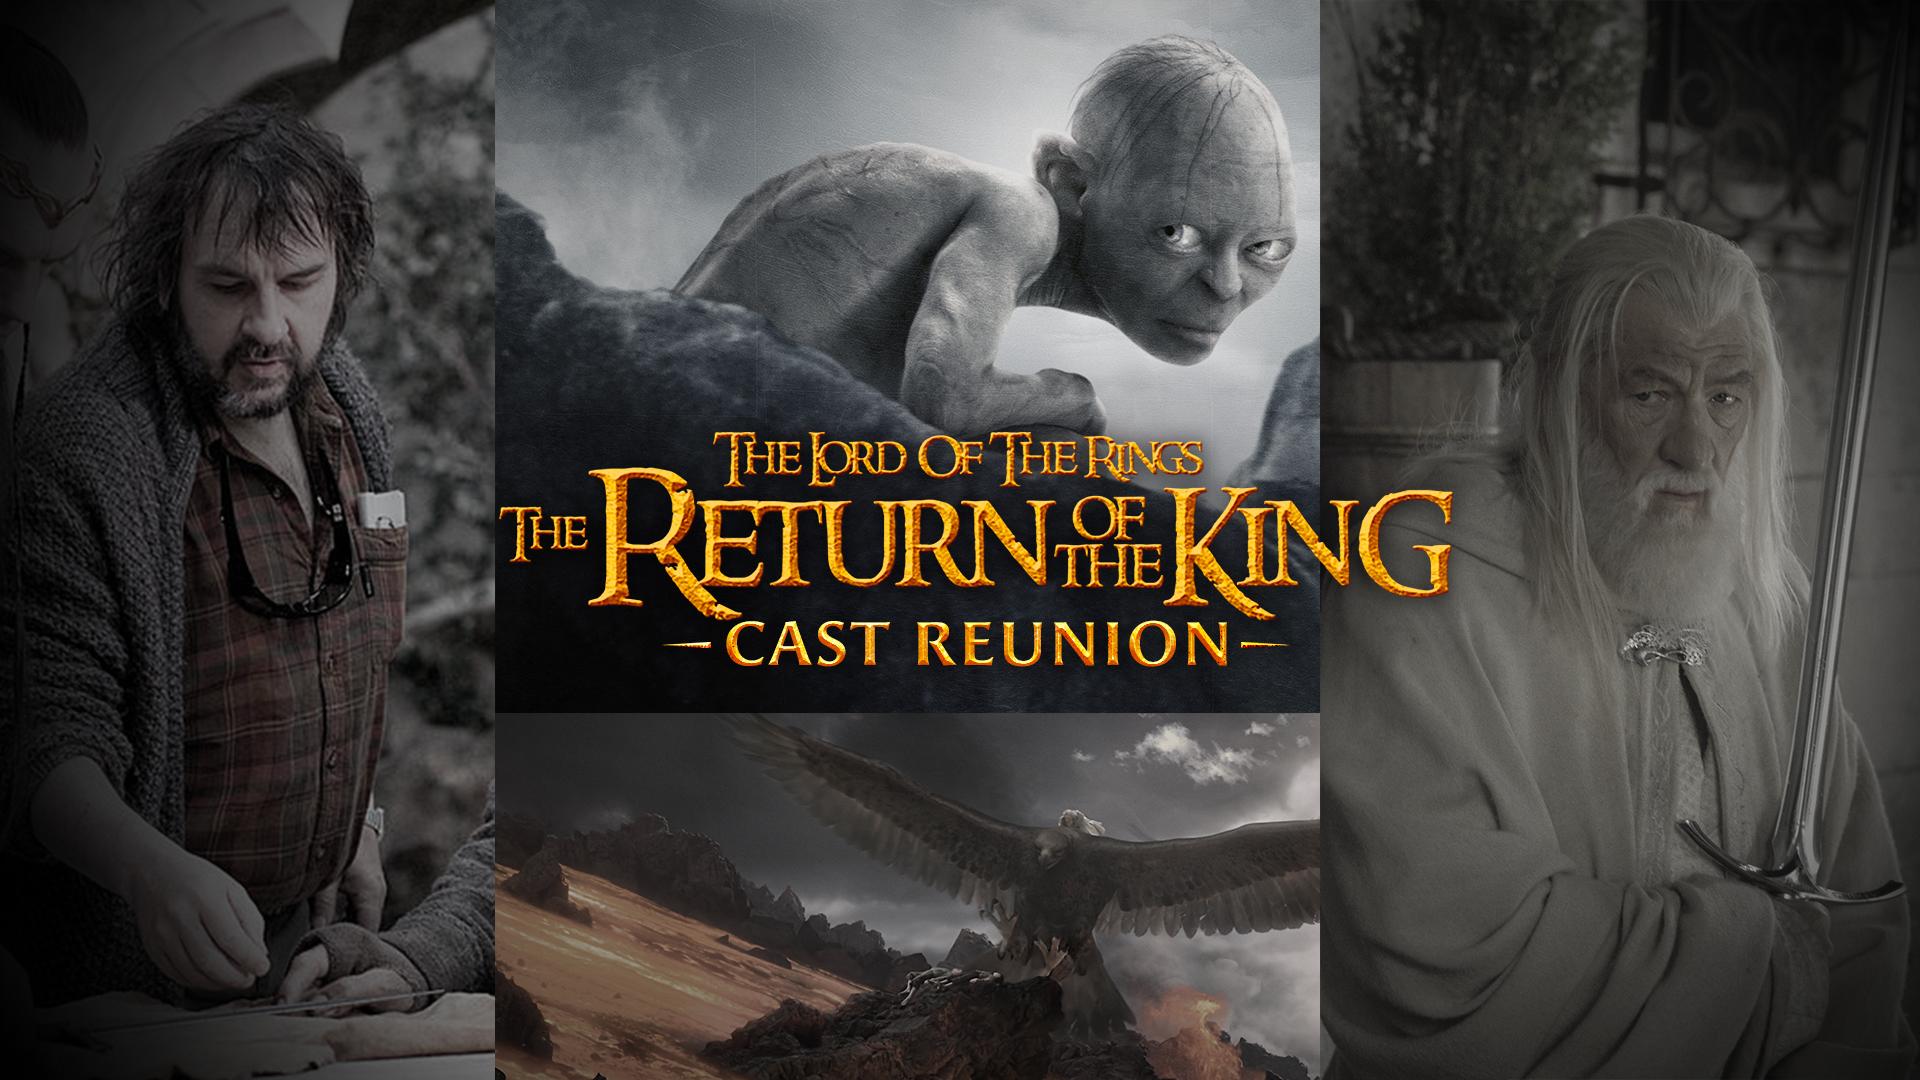 LOTR: Return of the King